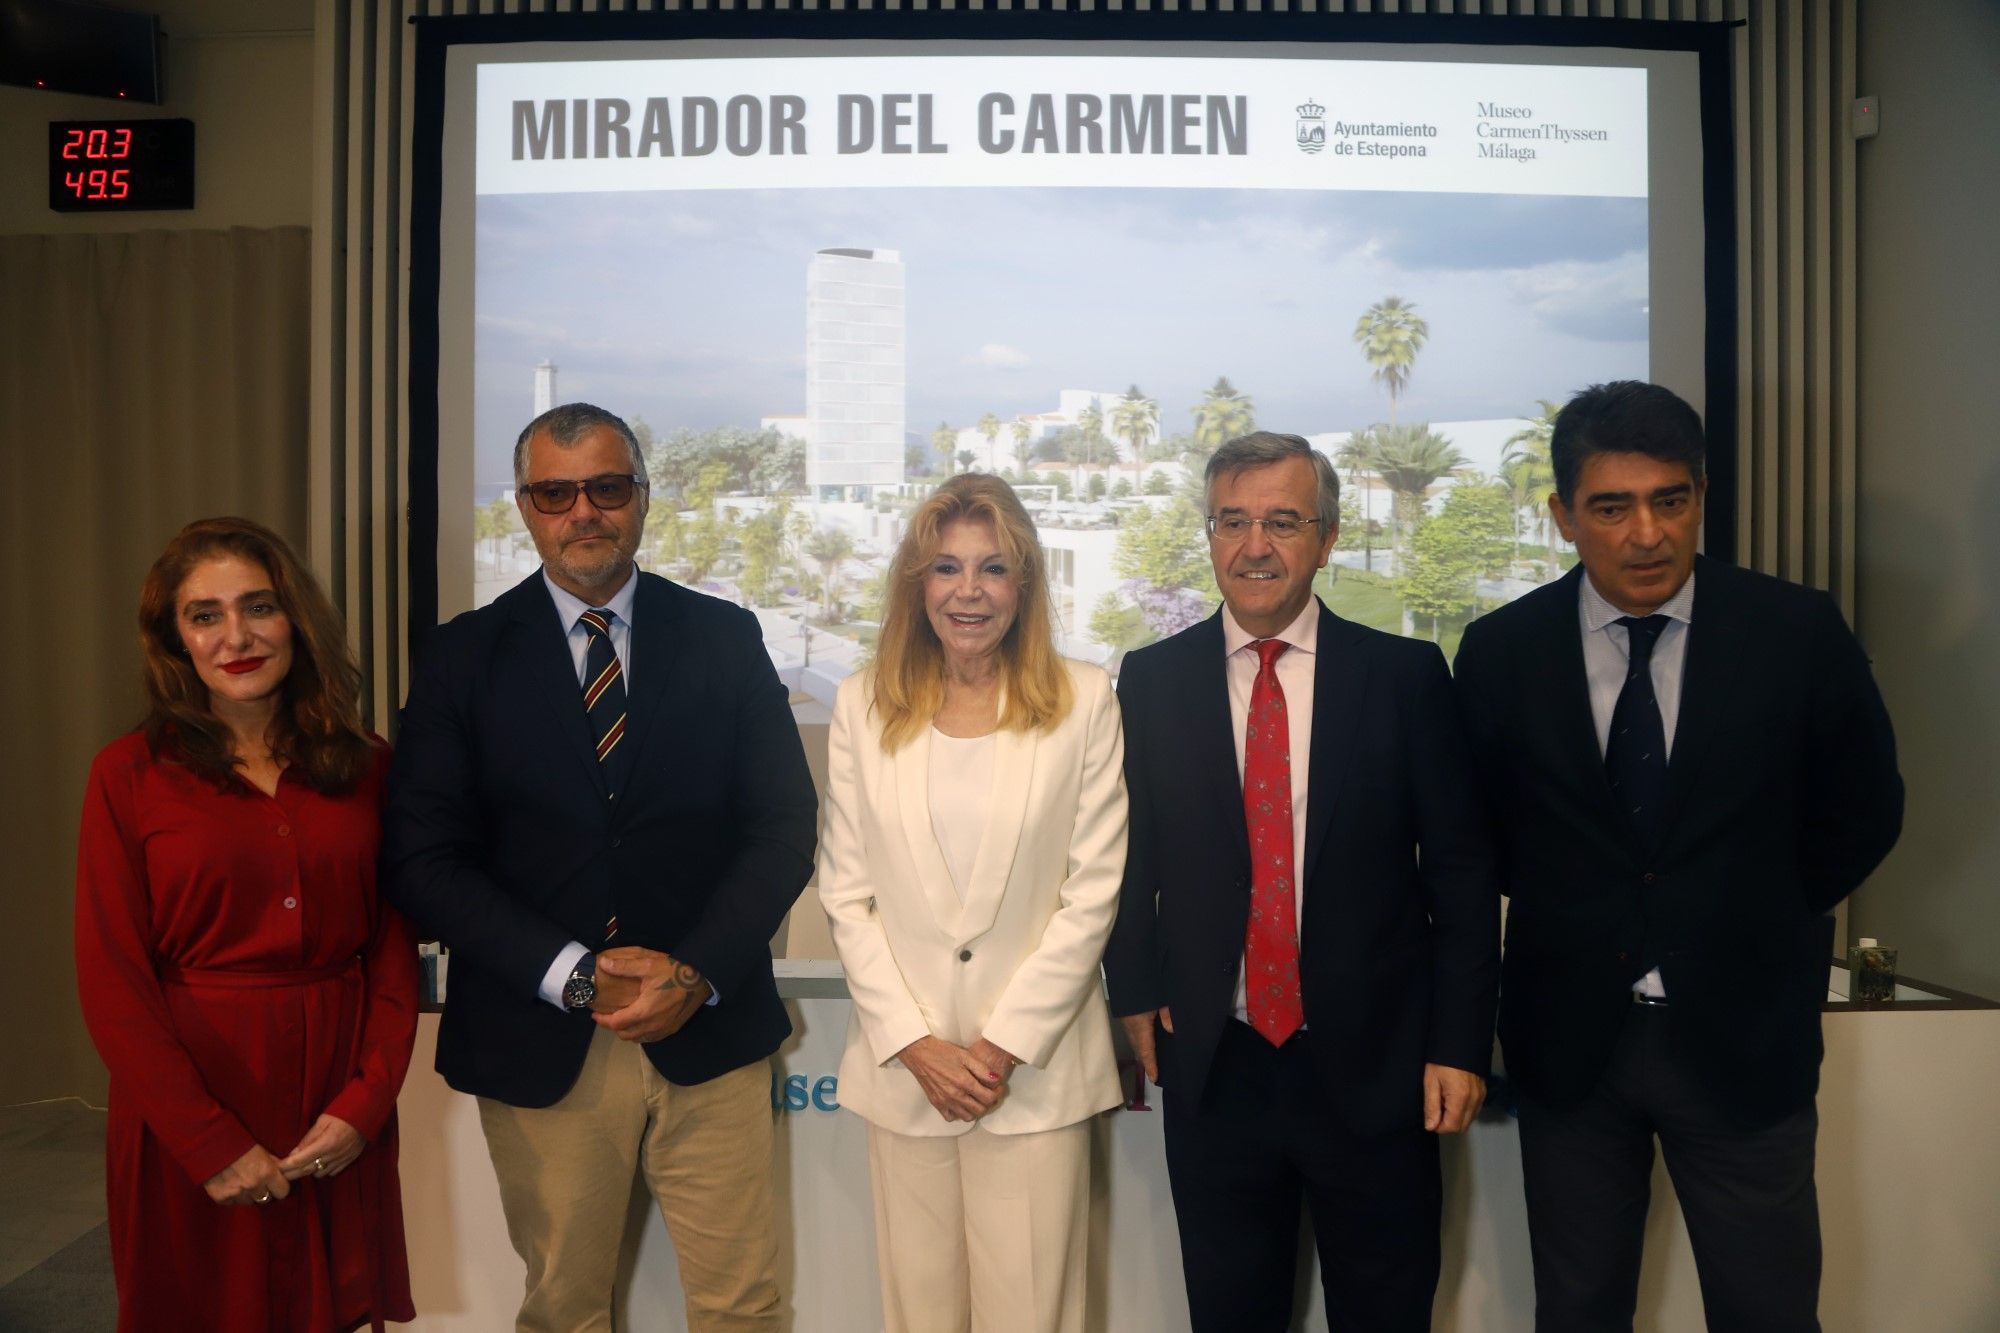 Carmen Thyssen visita Málaga para presentar su nuevo proyecto museográfico en Estepona